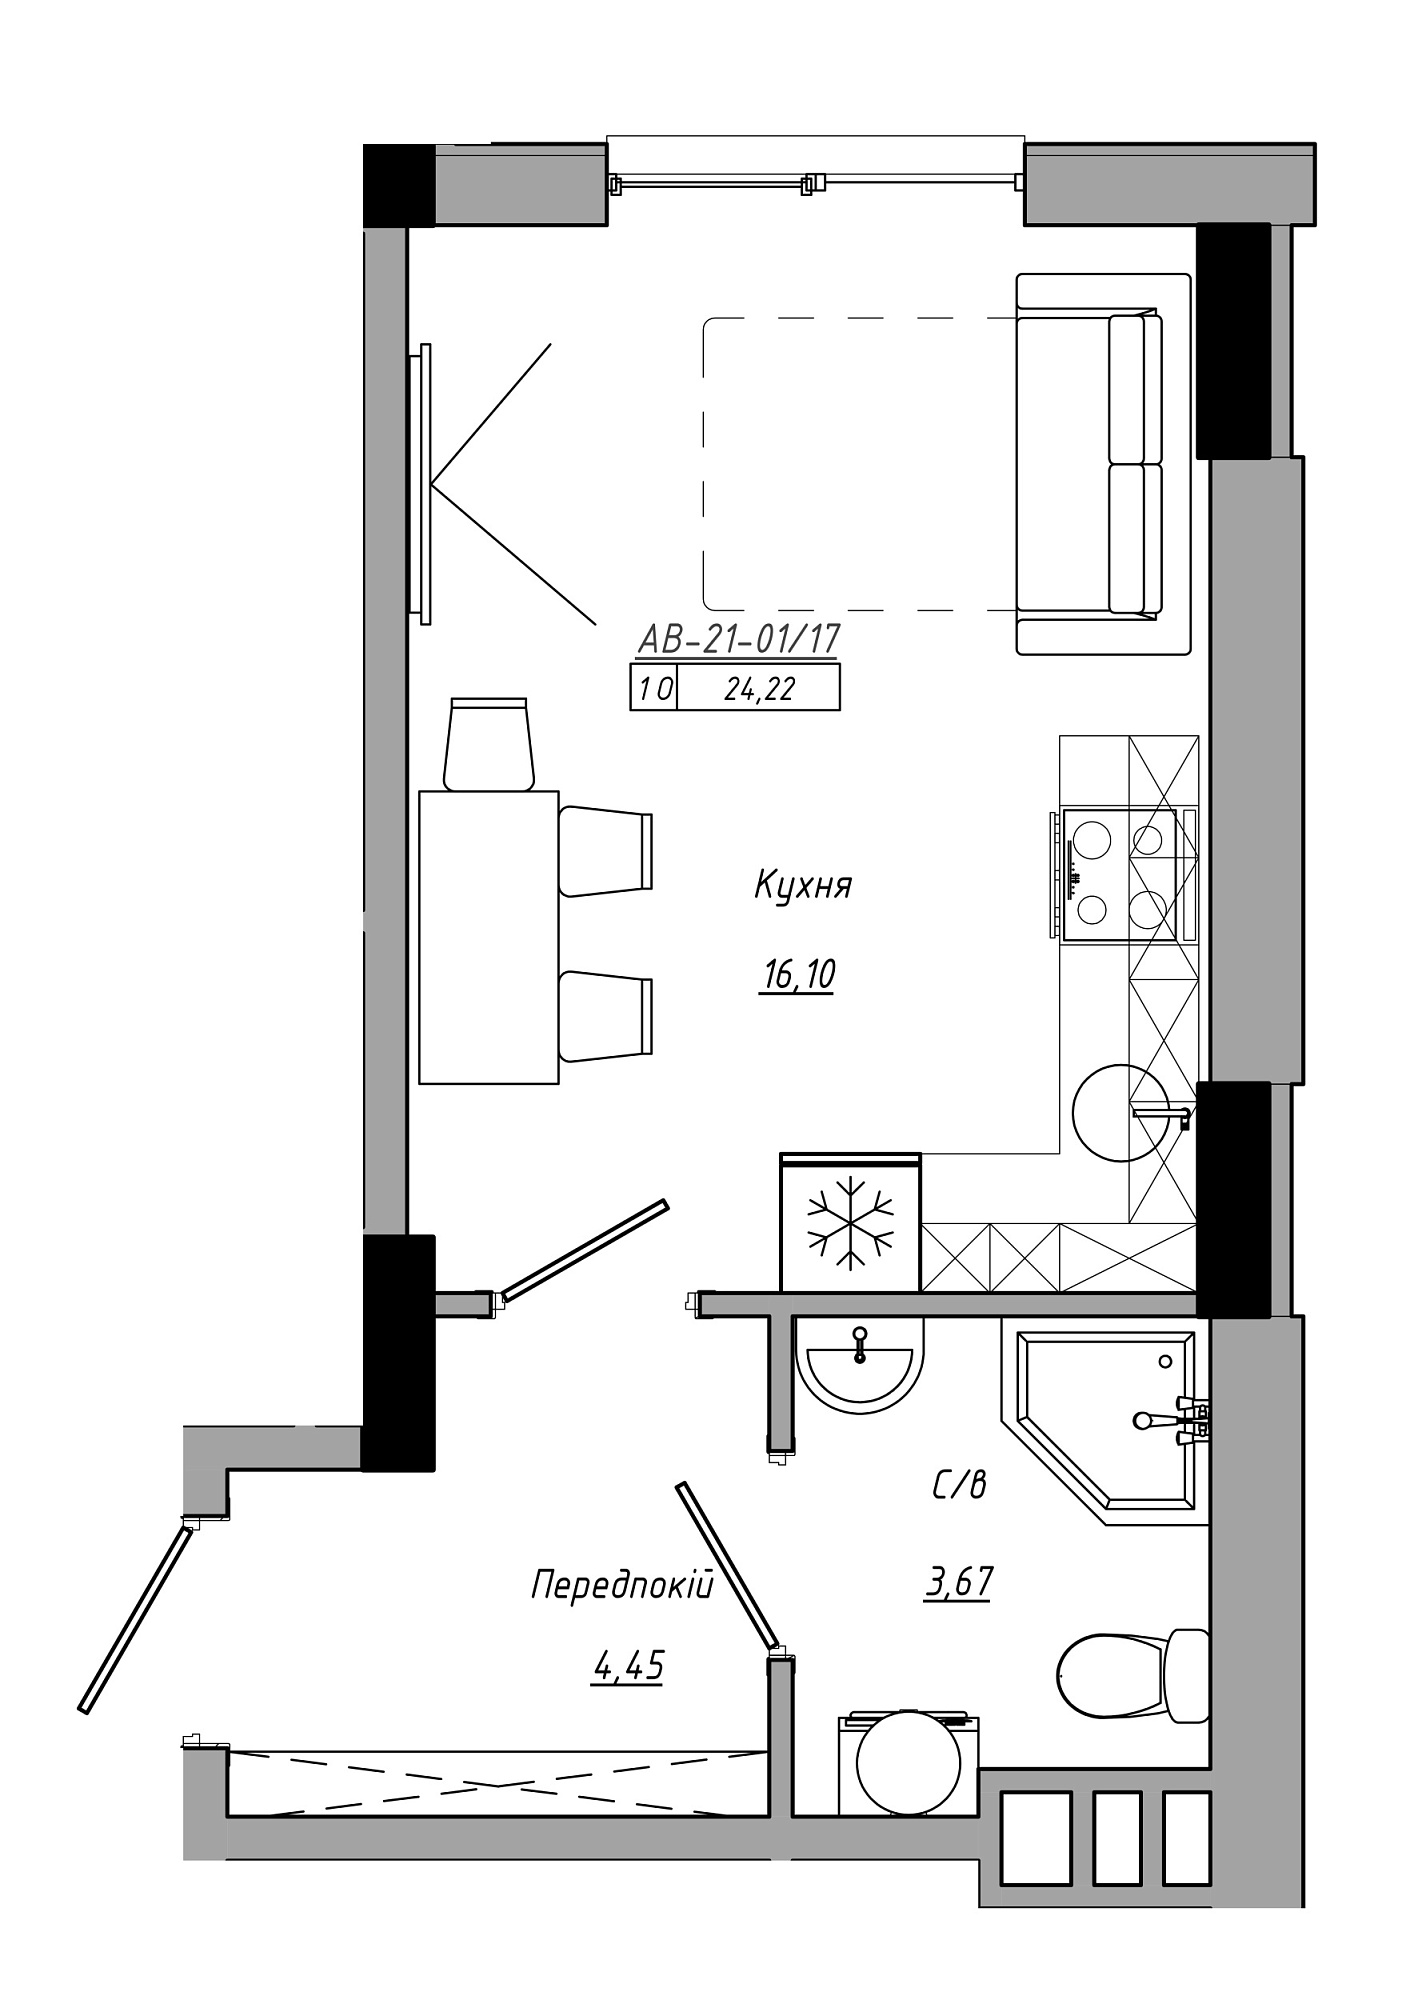 Планування Smart-квартира площею 24.22м2, AB-21-01/00017.